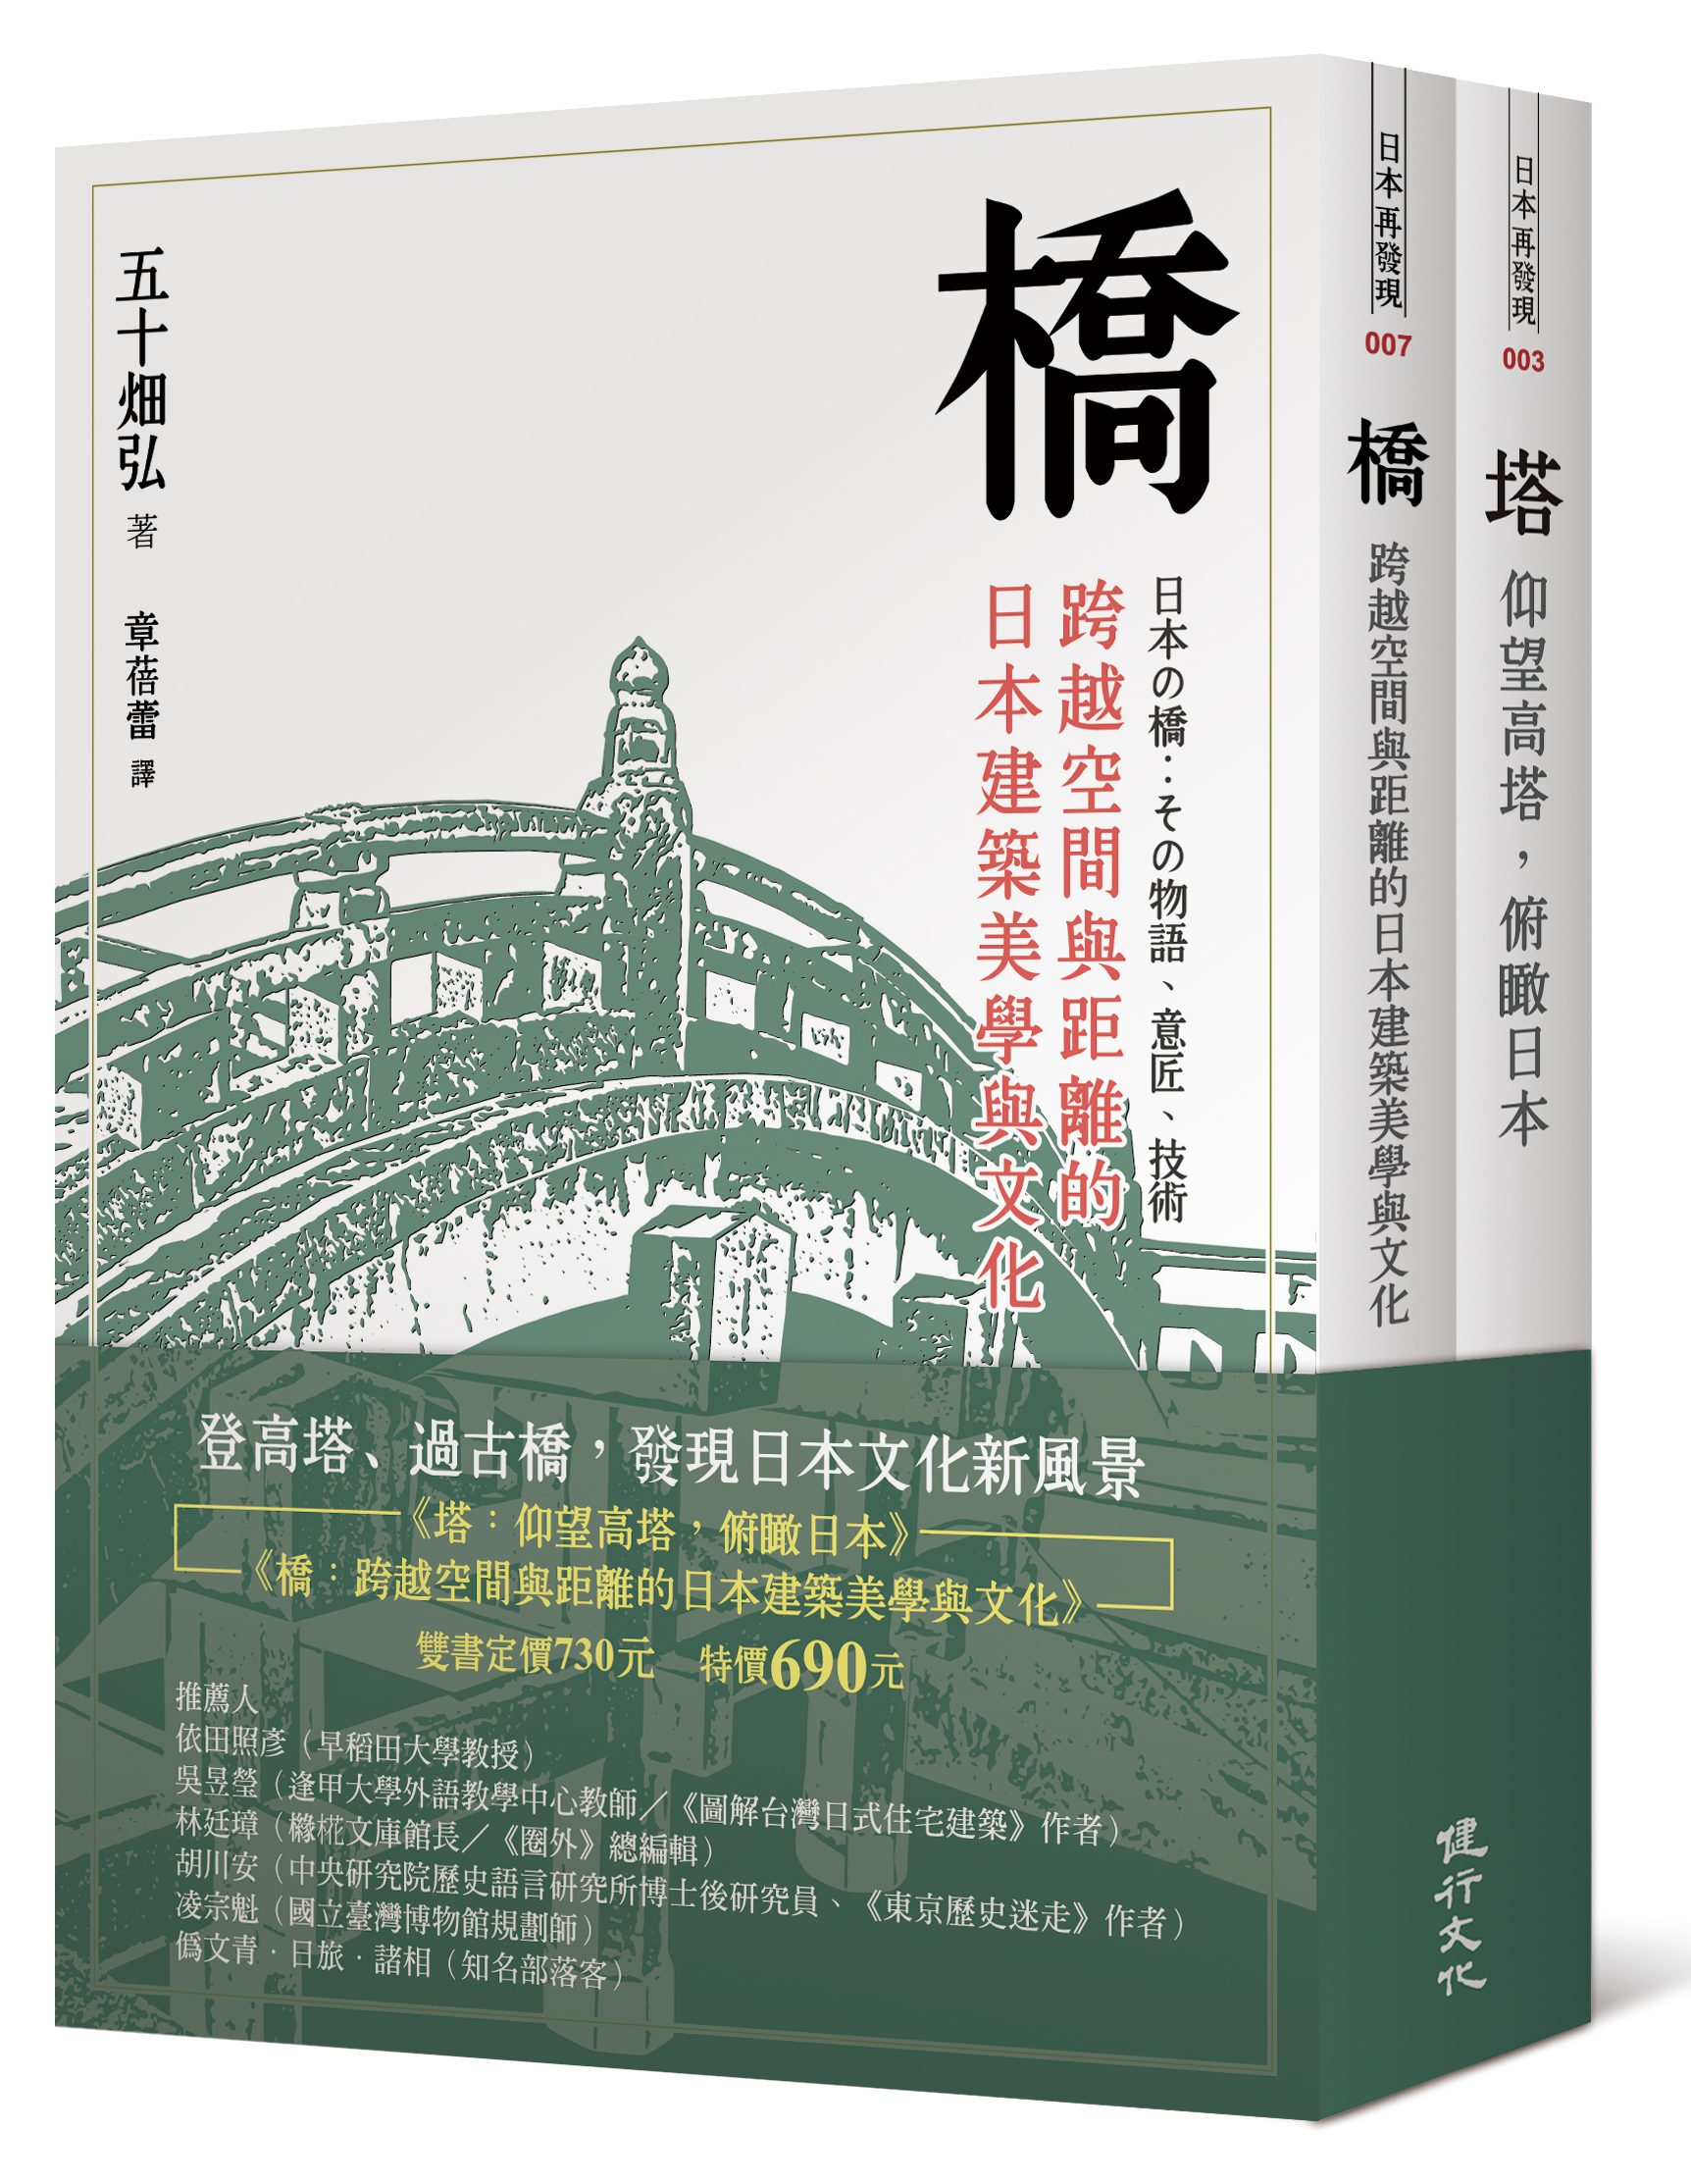 橋與塔──觀看日本文化的特殊角度| 九歌文學誌